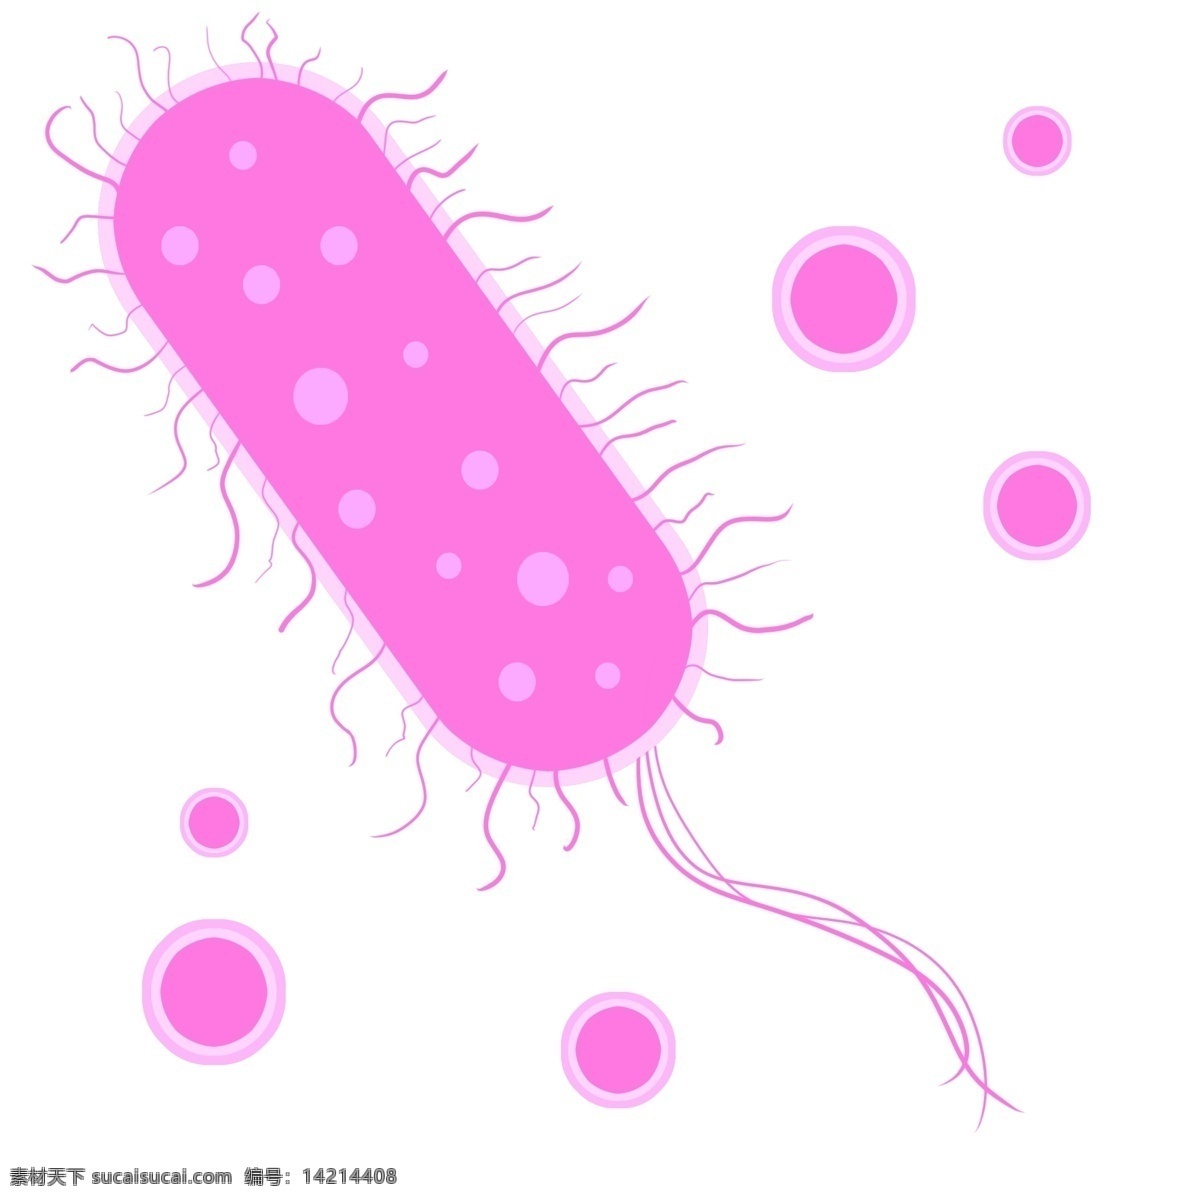 分散 细菌 装饰 插画 紫色的细菌 分散细菌 漂亮的细菌 创意细菌 立体细菌 卡通细菌 病毒细菌